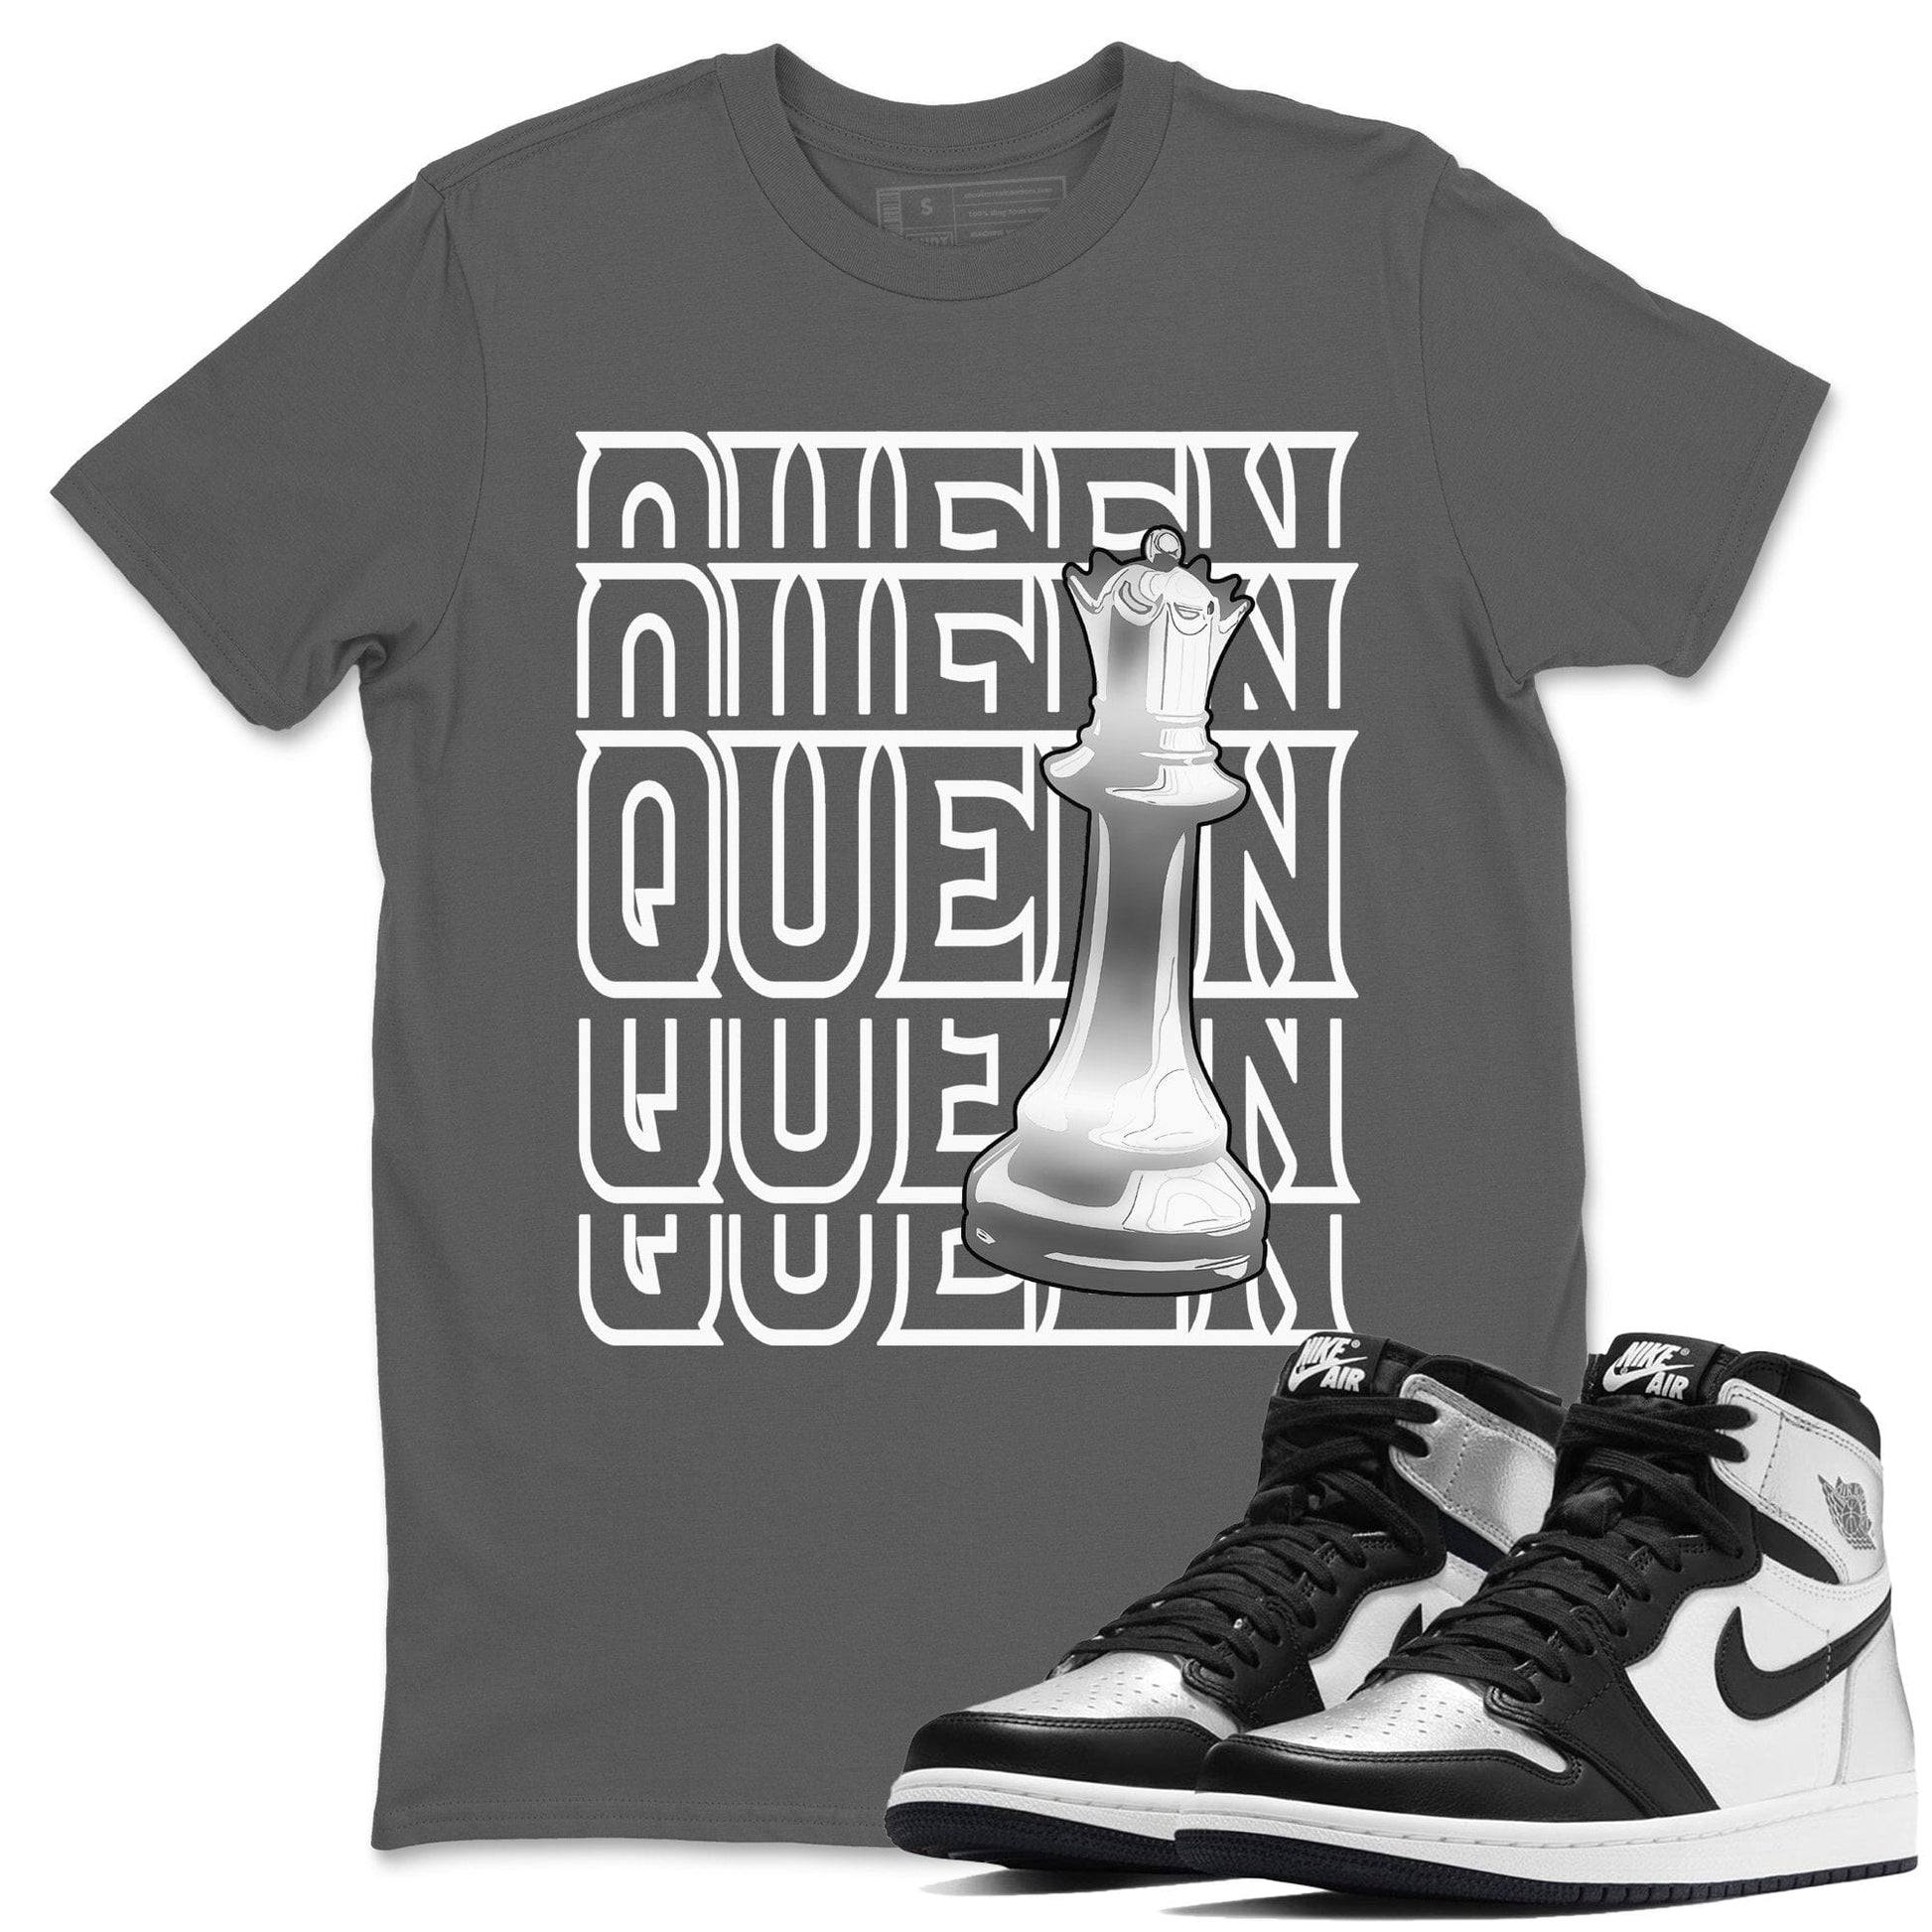 Jordan 1 Silver Toe Sneaker Match Tees Queen Sneaker Tees Jordan 1 Silver Toe Sneaker Release Tees Unisex Shirts